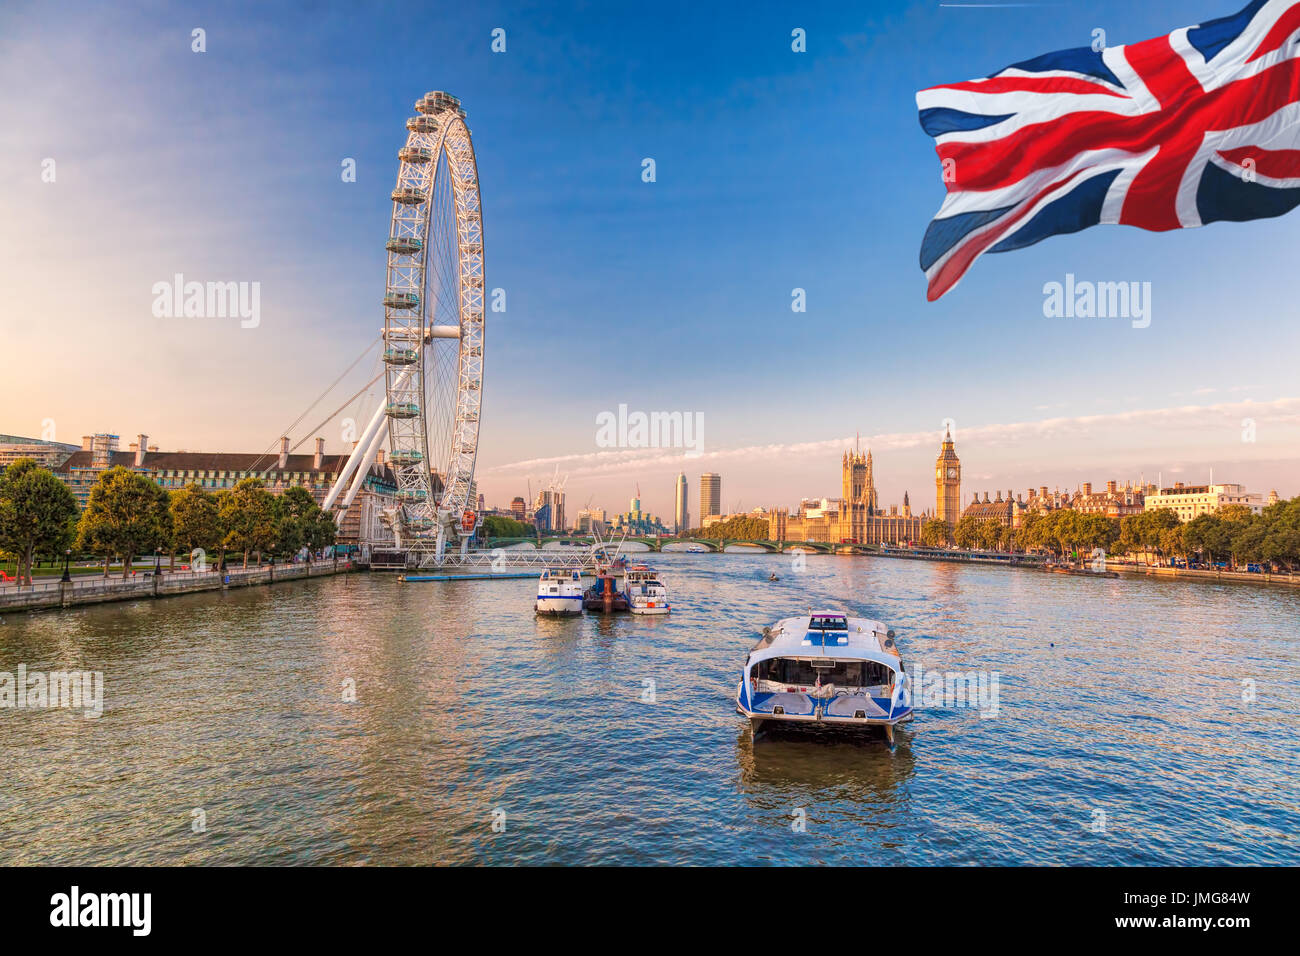 Amanecer con el Big Ben, el Palacio de Westminster, el London Eye, el puente de Westminster, Río Támesis, Londres, Inglaterra, Reino Unido. Foto de stock